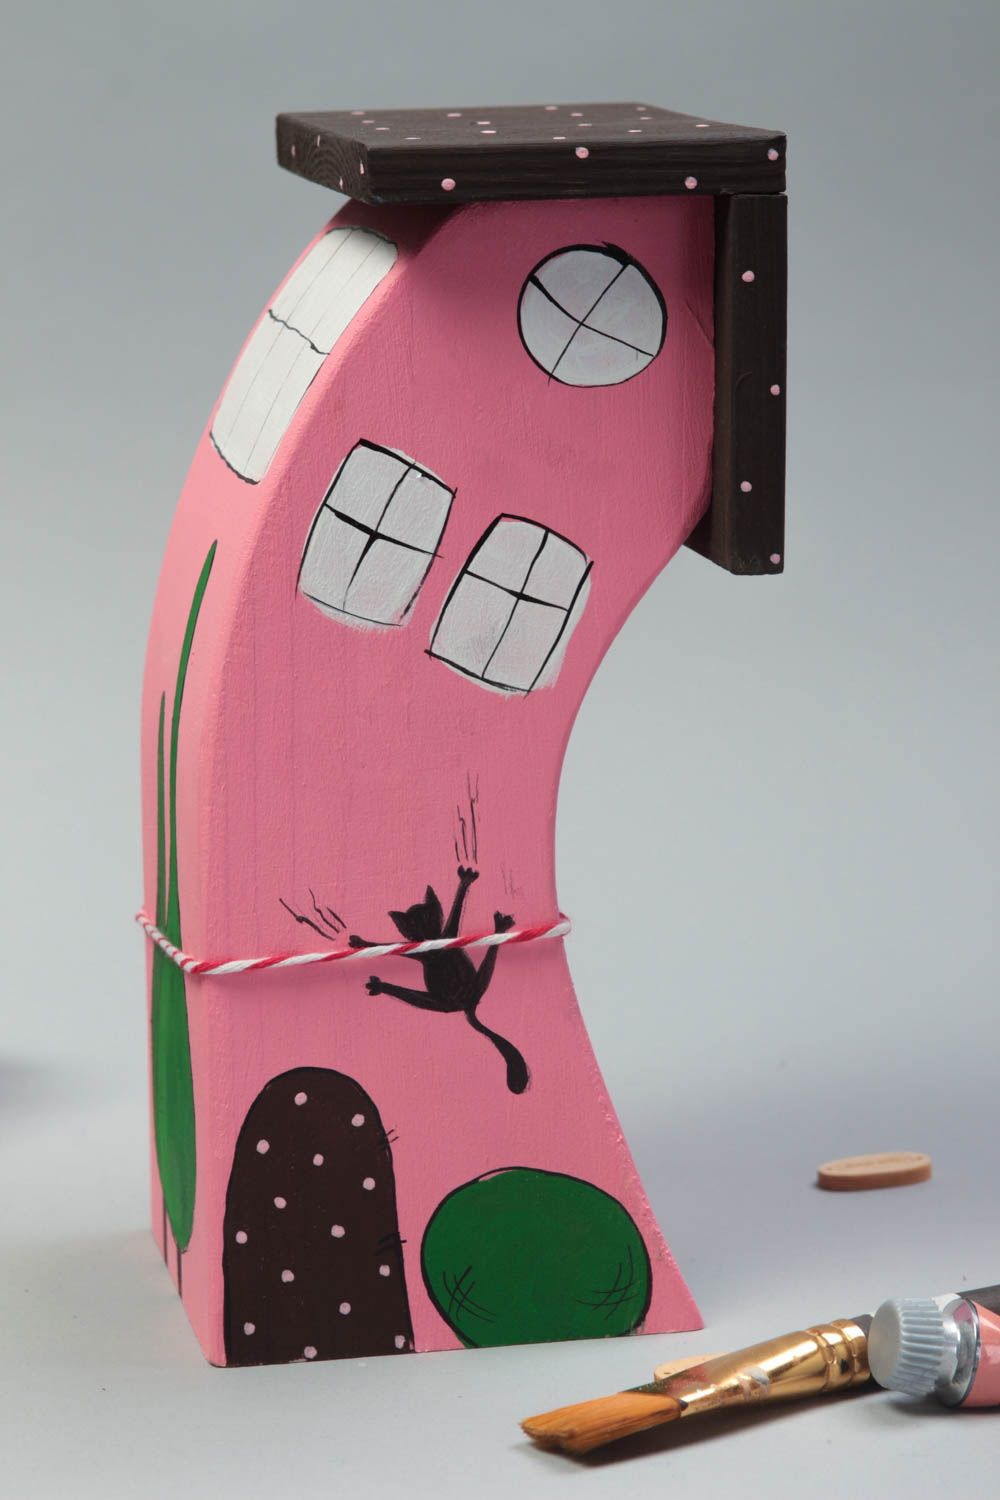 Оригинальный розовый домик для декора ручной работы расписанный красками фото 1